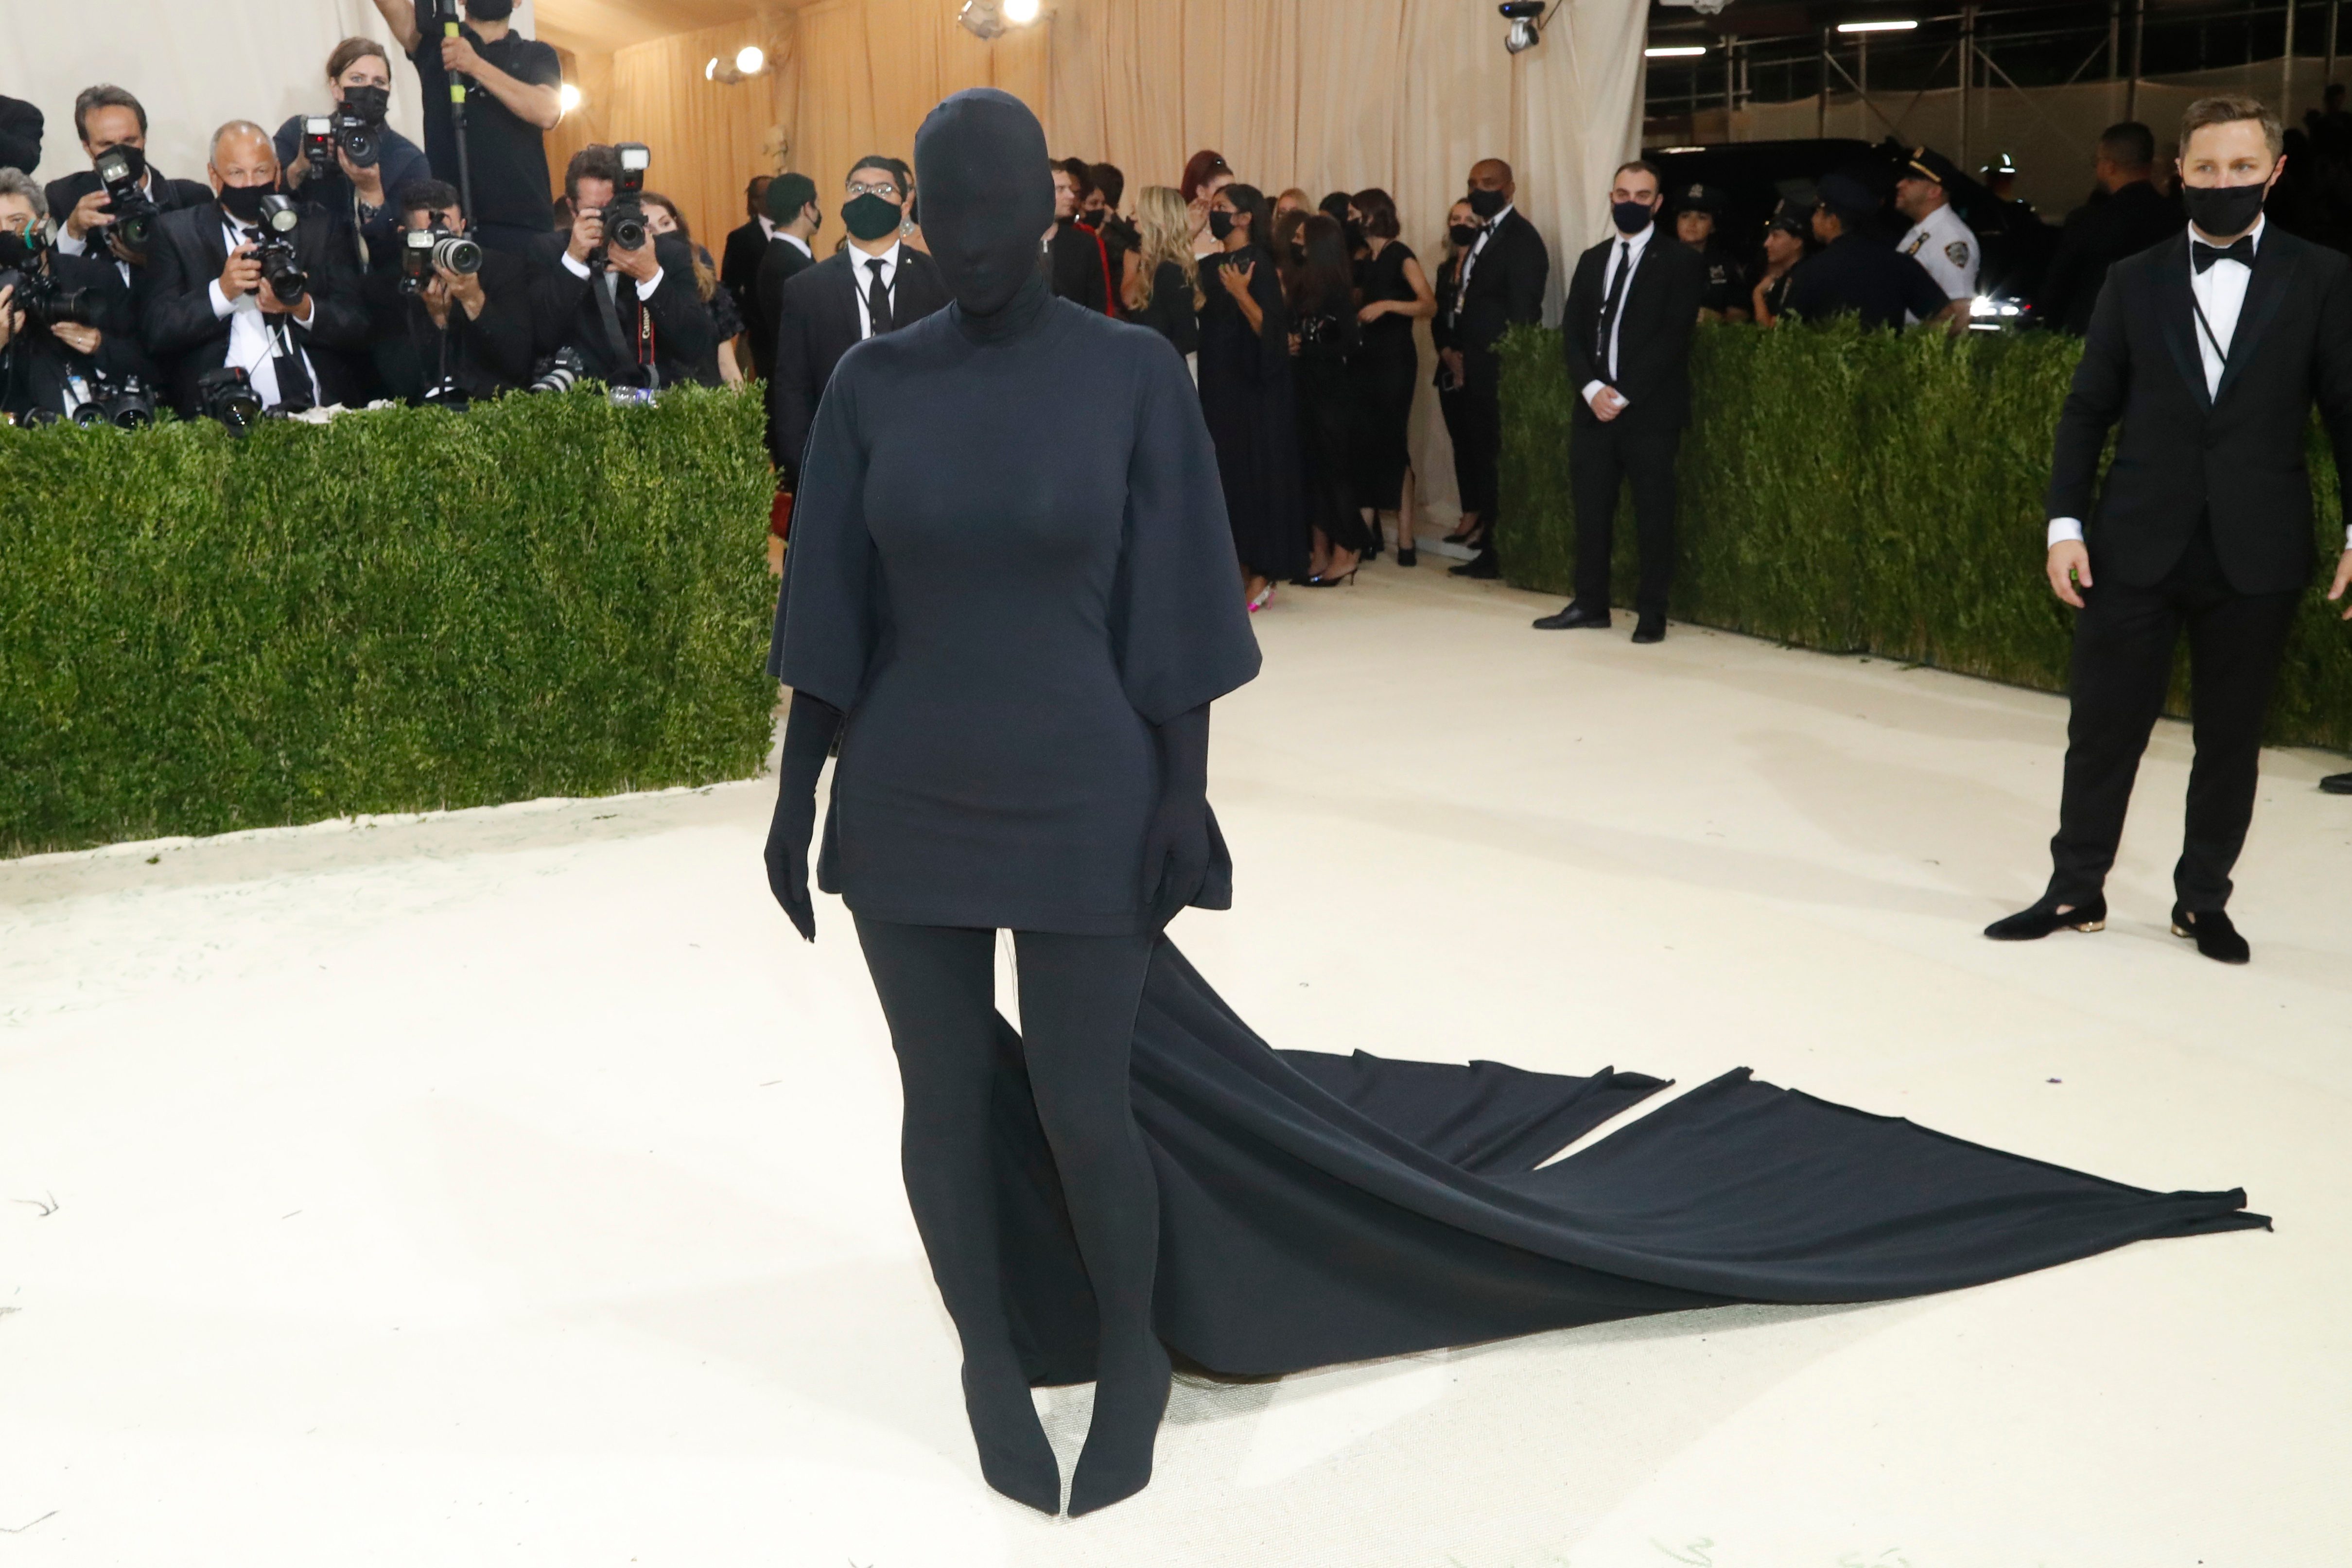 LOOK: Faceless Kim Kardashian turns heads at 2021 Met Gala